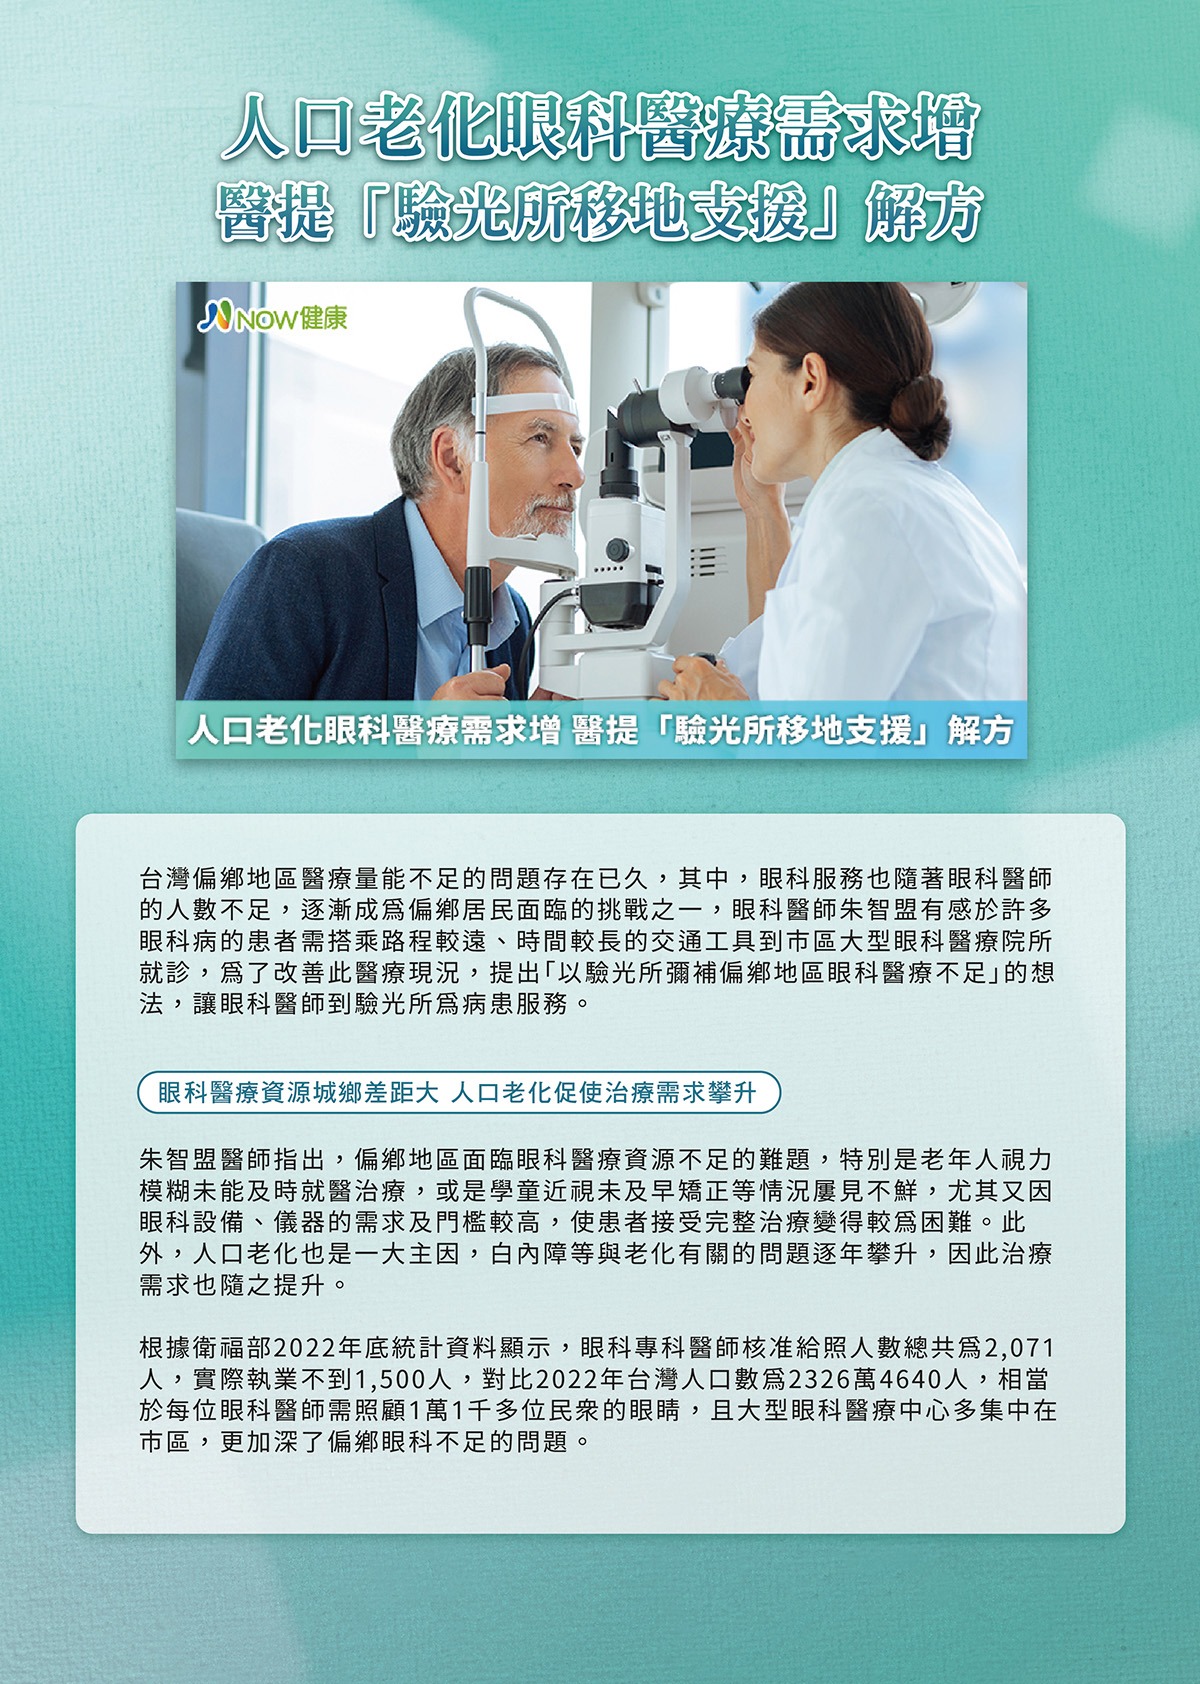 (第一頁)人口老化眼科醫療需求增 醫提「驗光所移地支援」解方